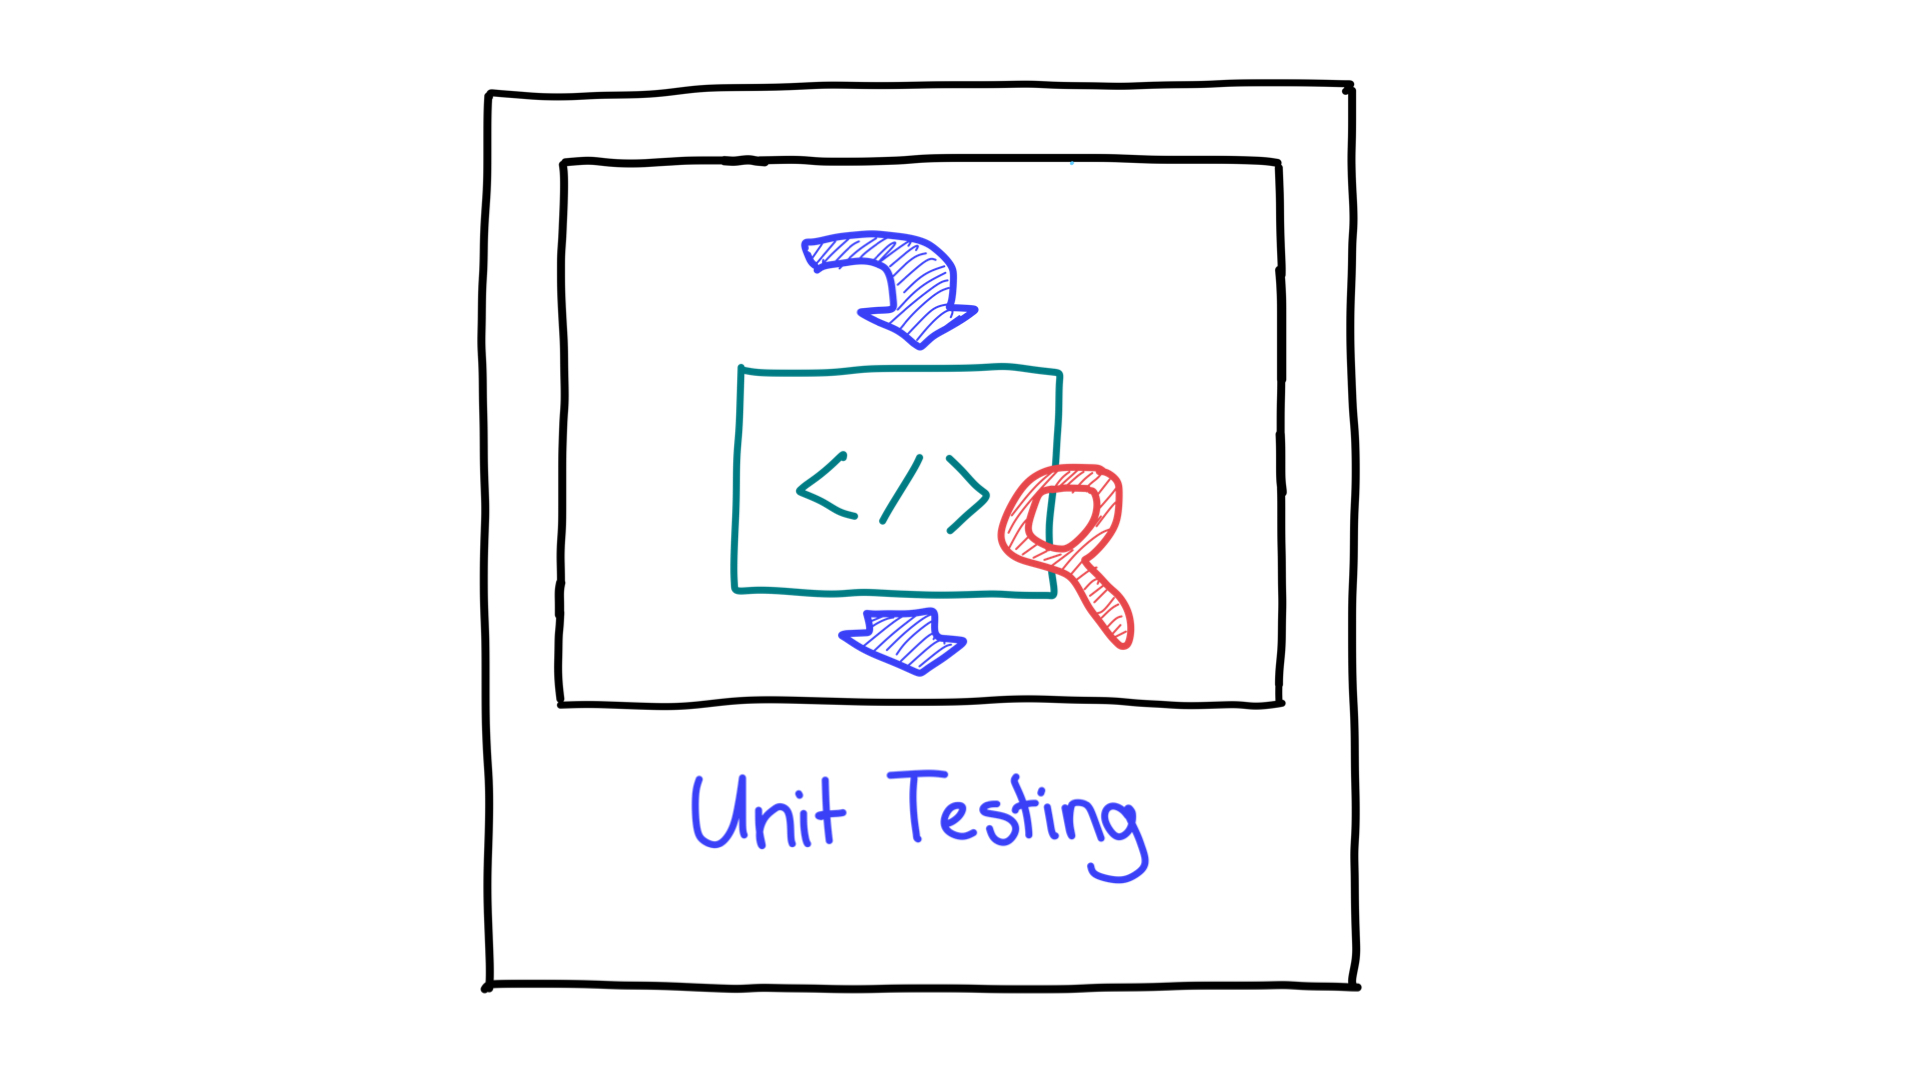 Representação simplificada de um teste de unidade mostrando a entrada e a saída.